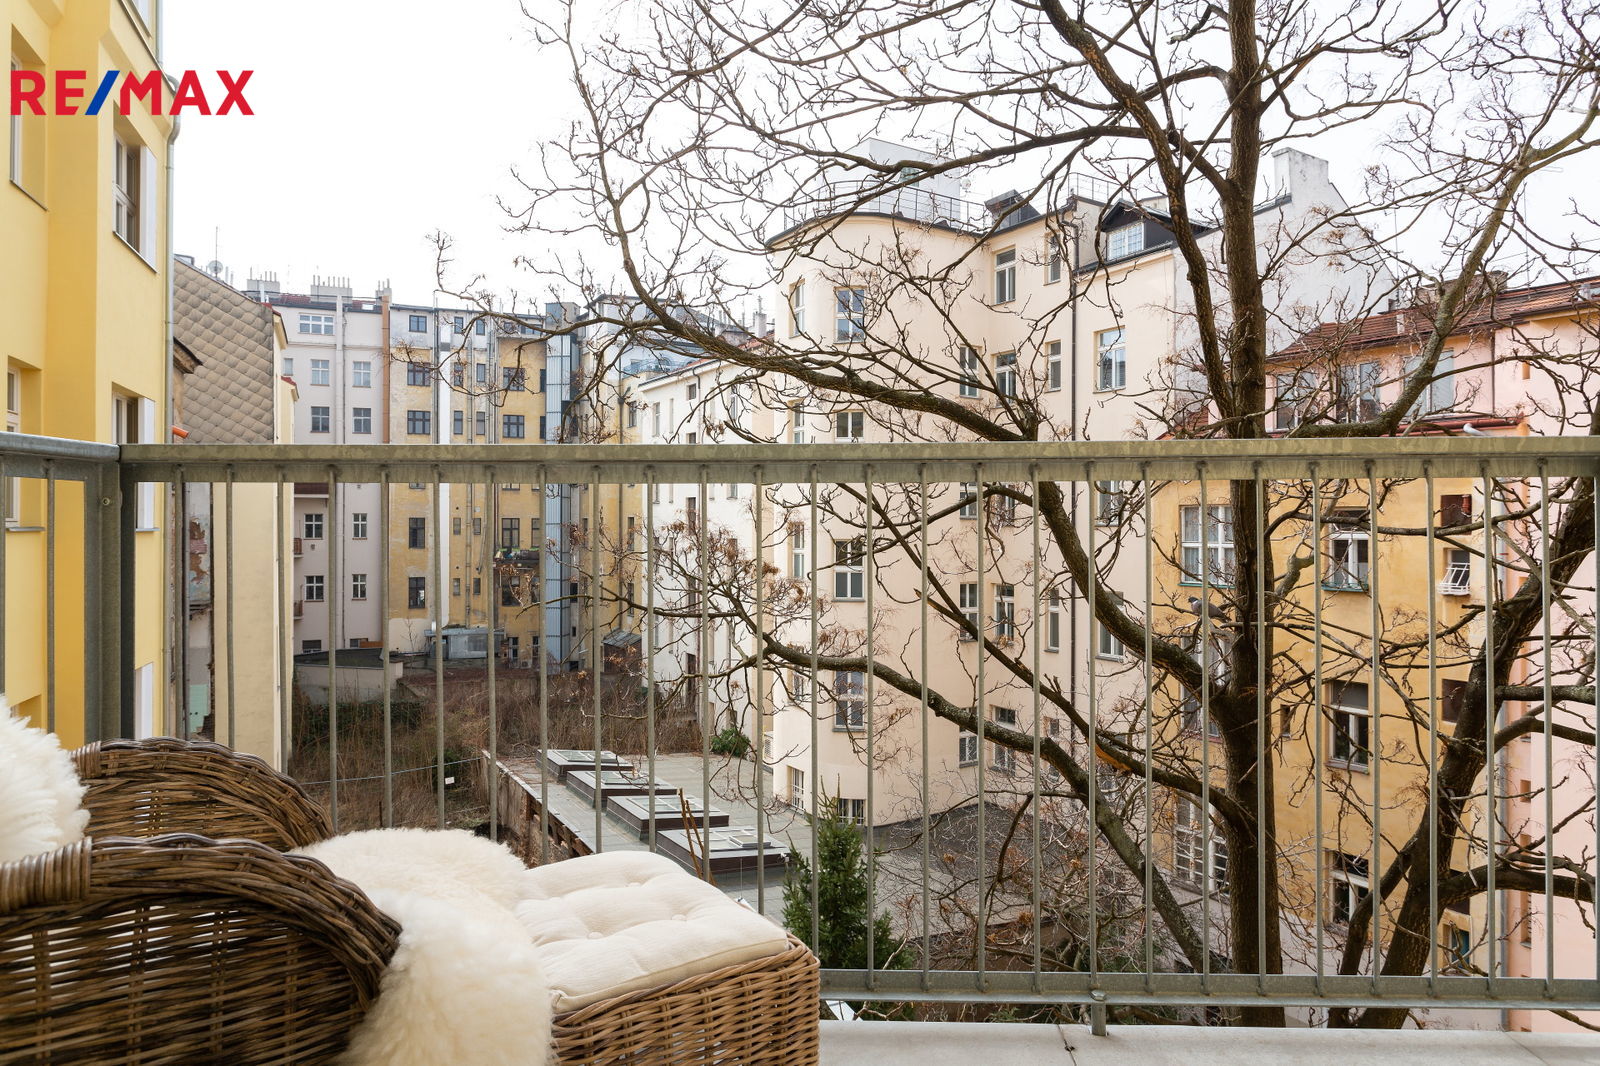 K pronájmu nový, krásný a světlý byt 1+kk s balkónem v čerstvě zrekonstruovaném domě na Vinohradech